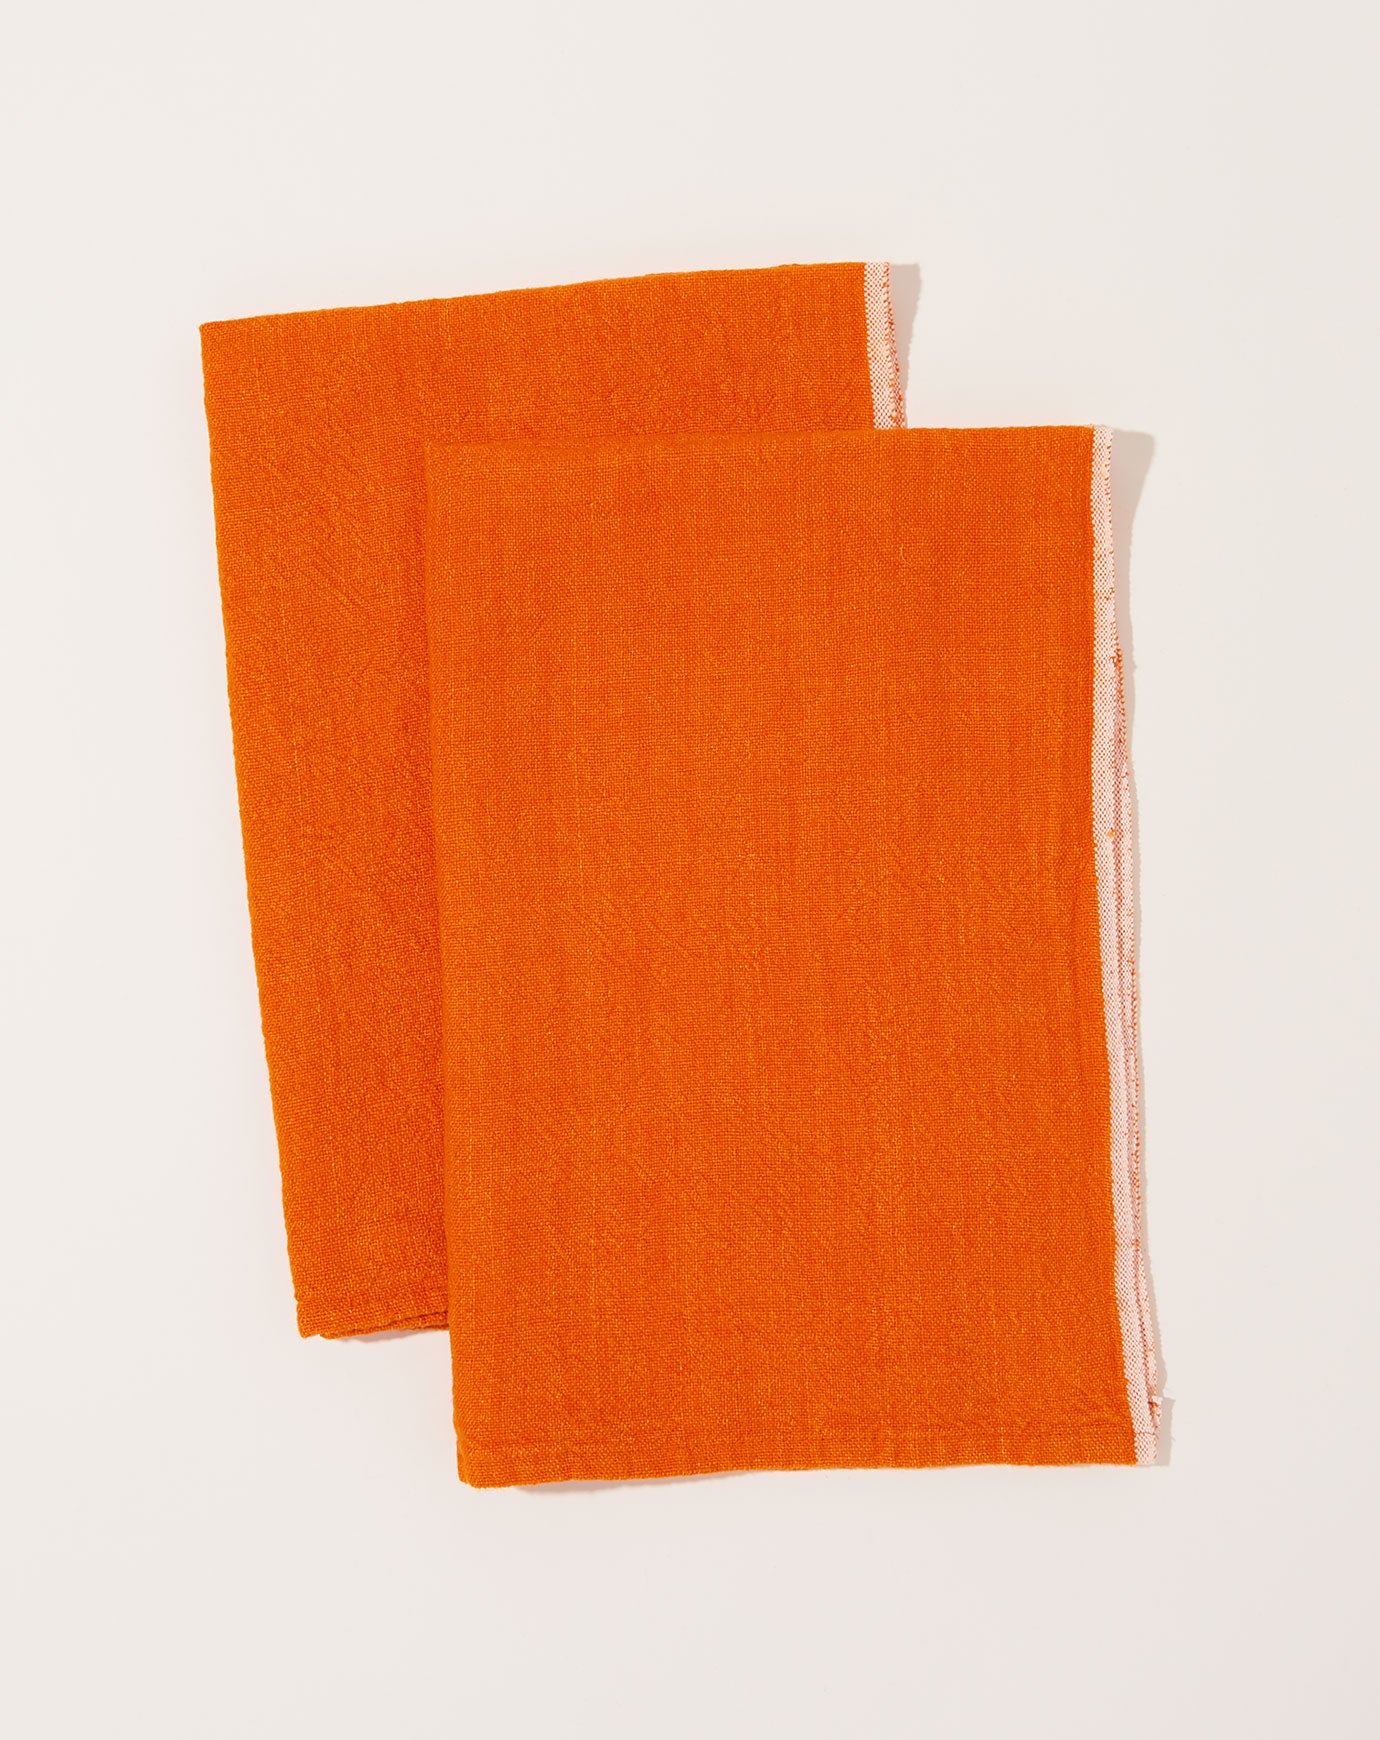 Caravan Chunky Linen Towels in Orange, Set of 2